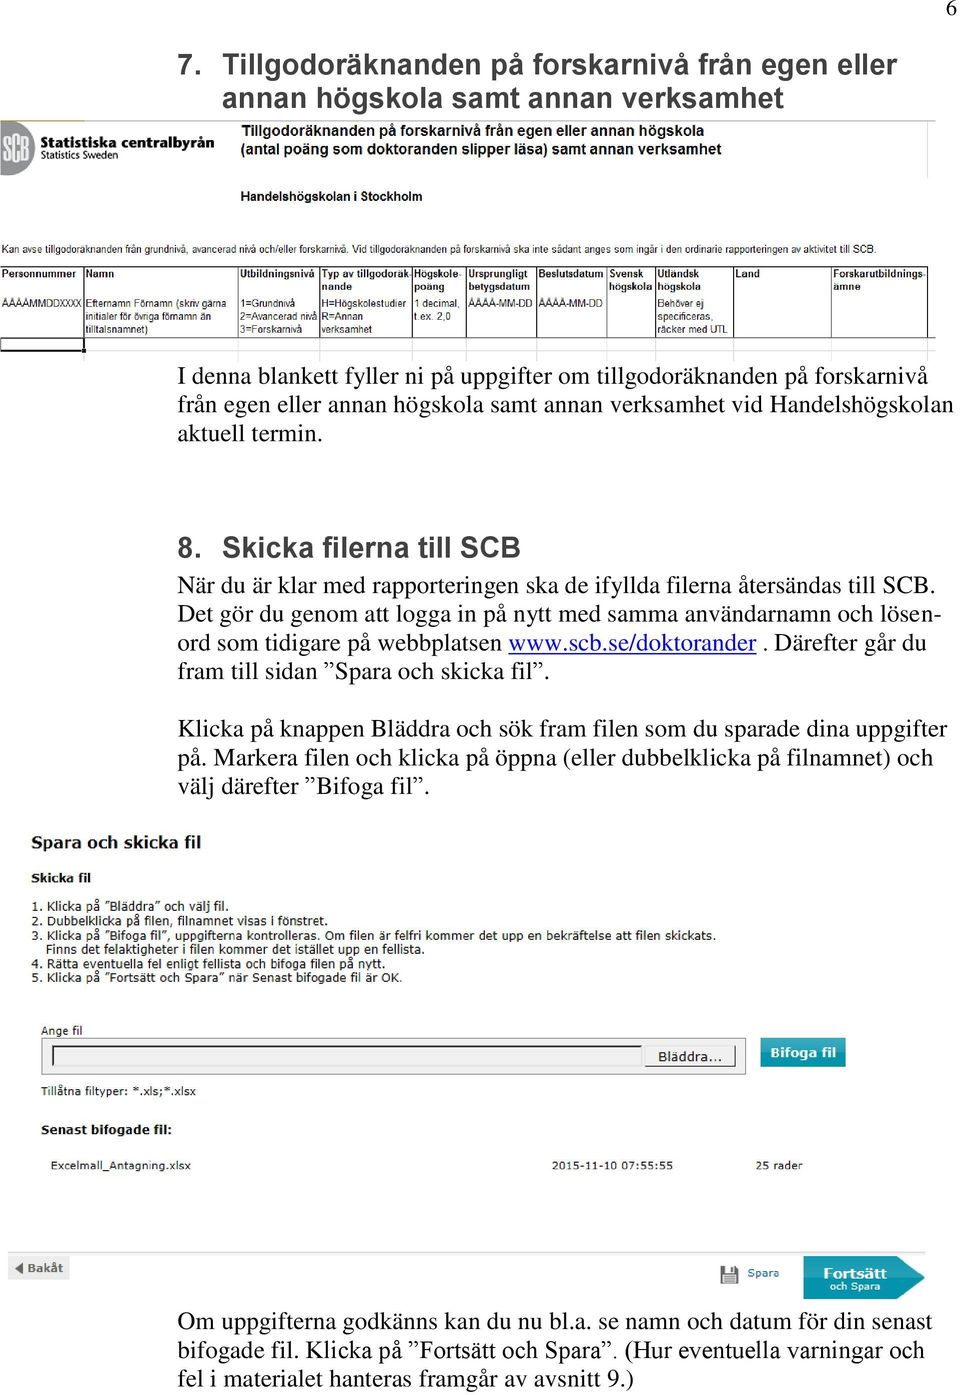 Det gör du genom att logga in på nytt med samma användarnamn och lösenord som tidigare på webbplatsen www.scb.se/doktorander. Därefter går du fram till sidan Spara och skicka fil.